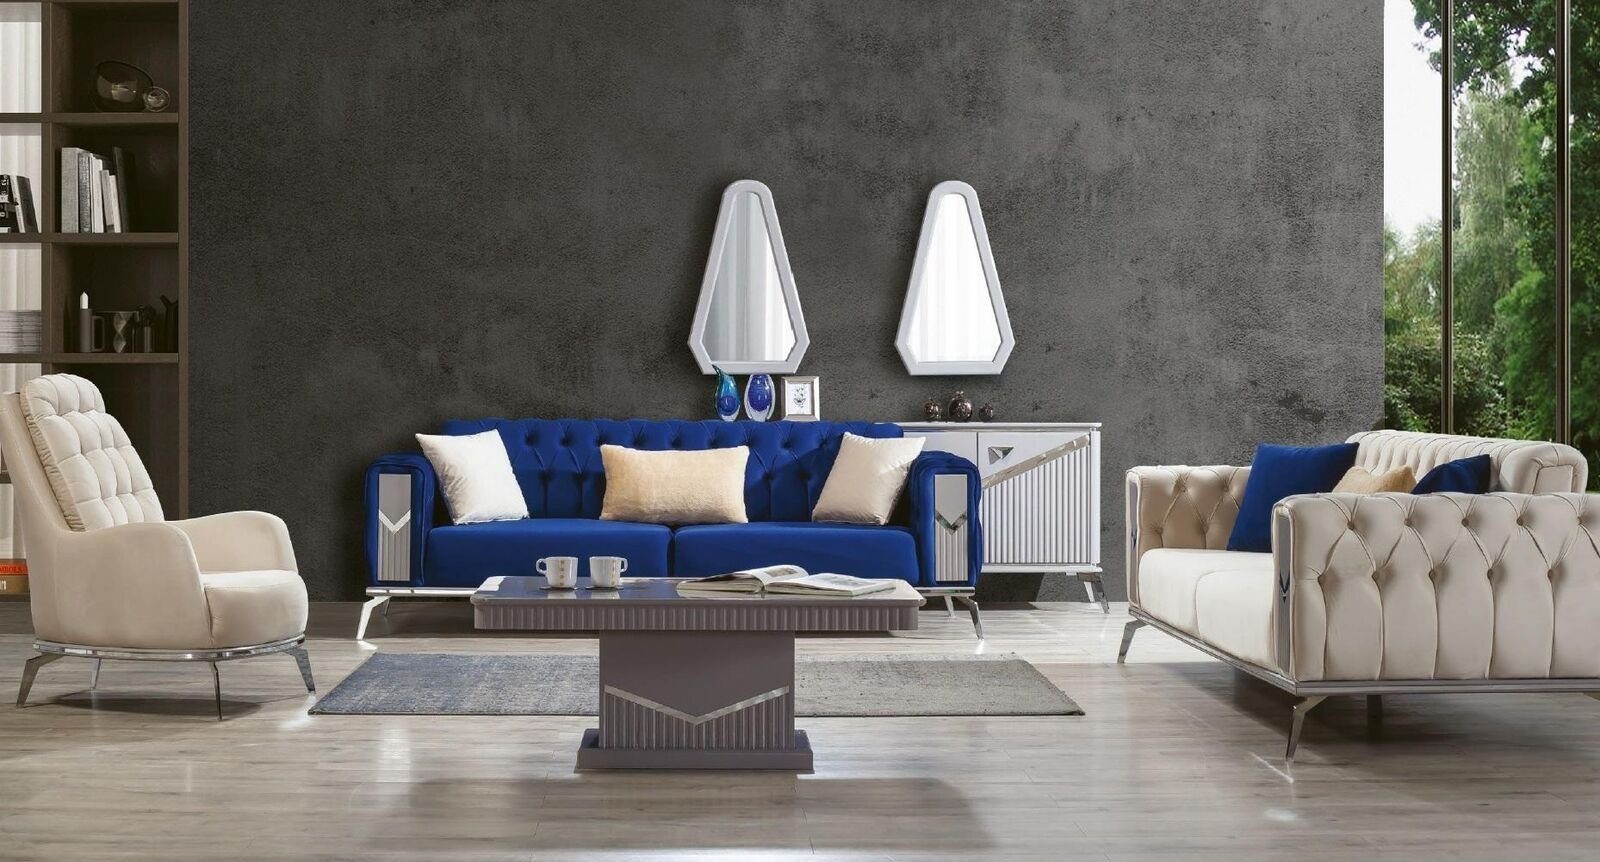 3tlg. Wohnzimmer In Made Europe Set Garnituren, Sofa Couch Polster JVmoebel Möbel Sofagarnitur 3+3+1